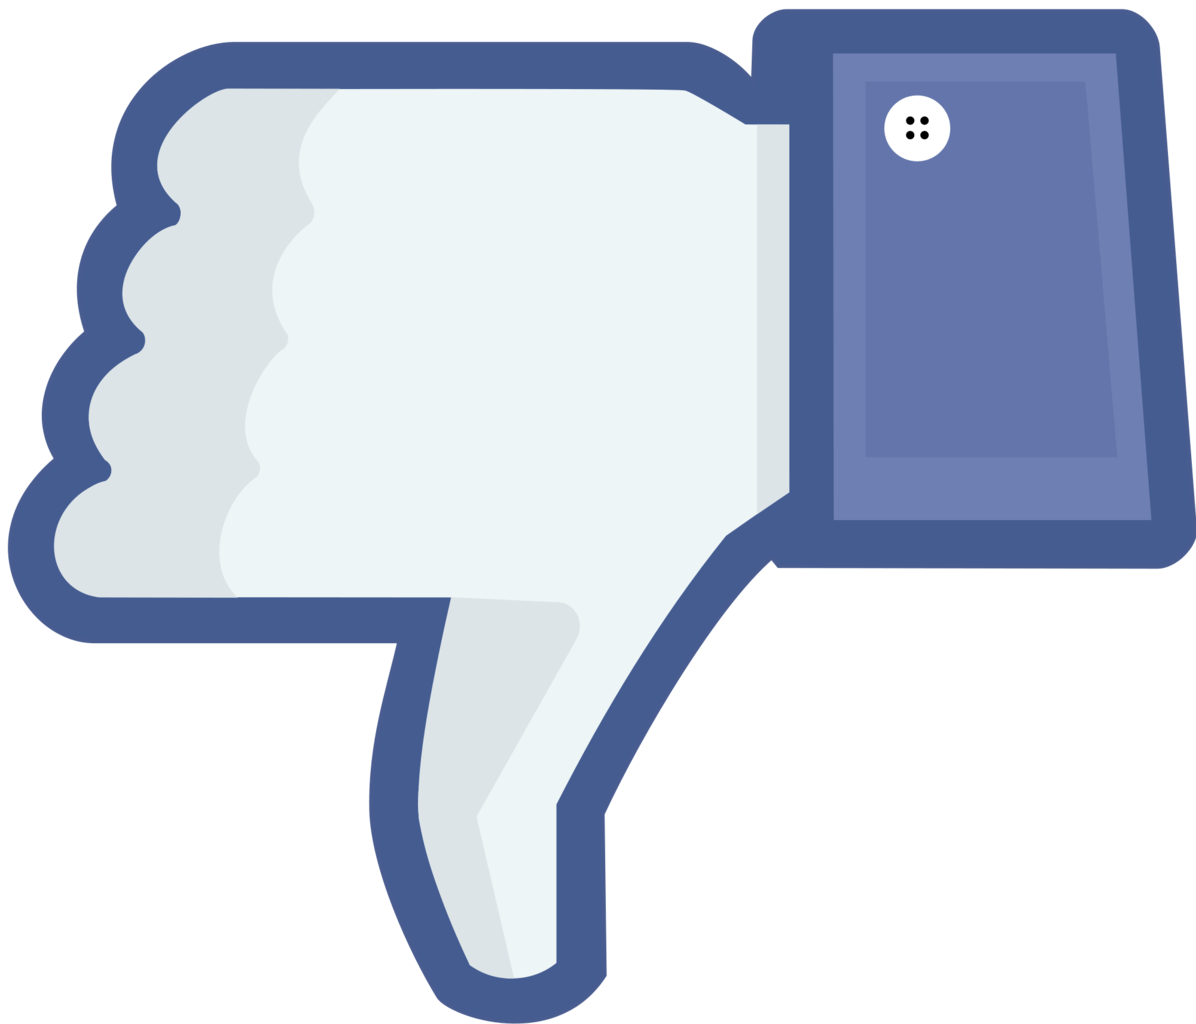 Facebook Thumb Logo - Facebook Thumbs Up Logo Png Image